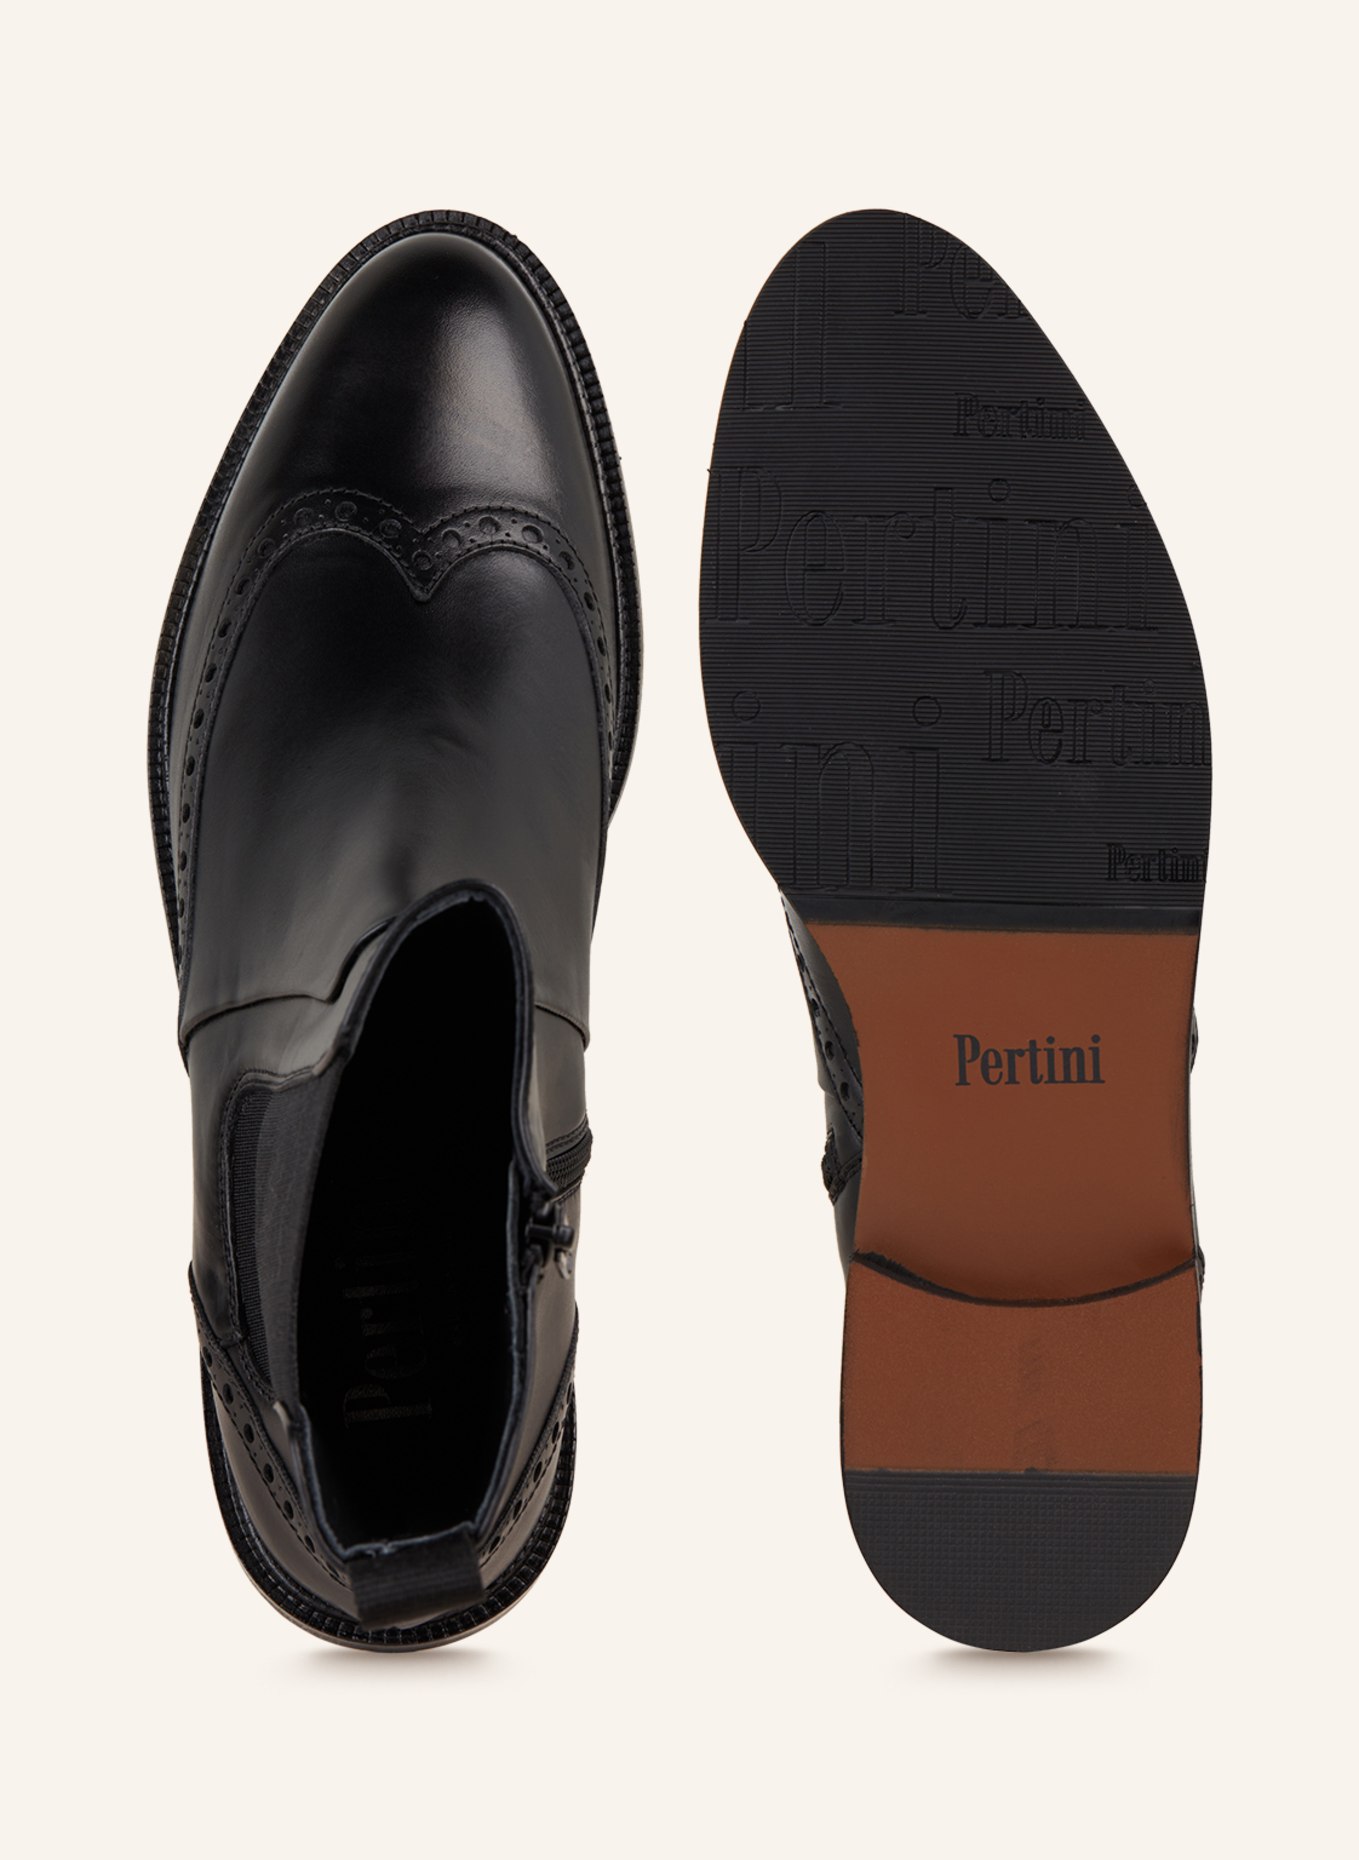 Pertini Chelsea boots, Color: BLACK (Image 6)